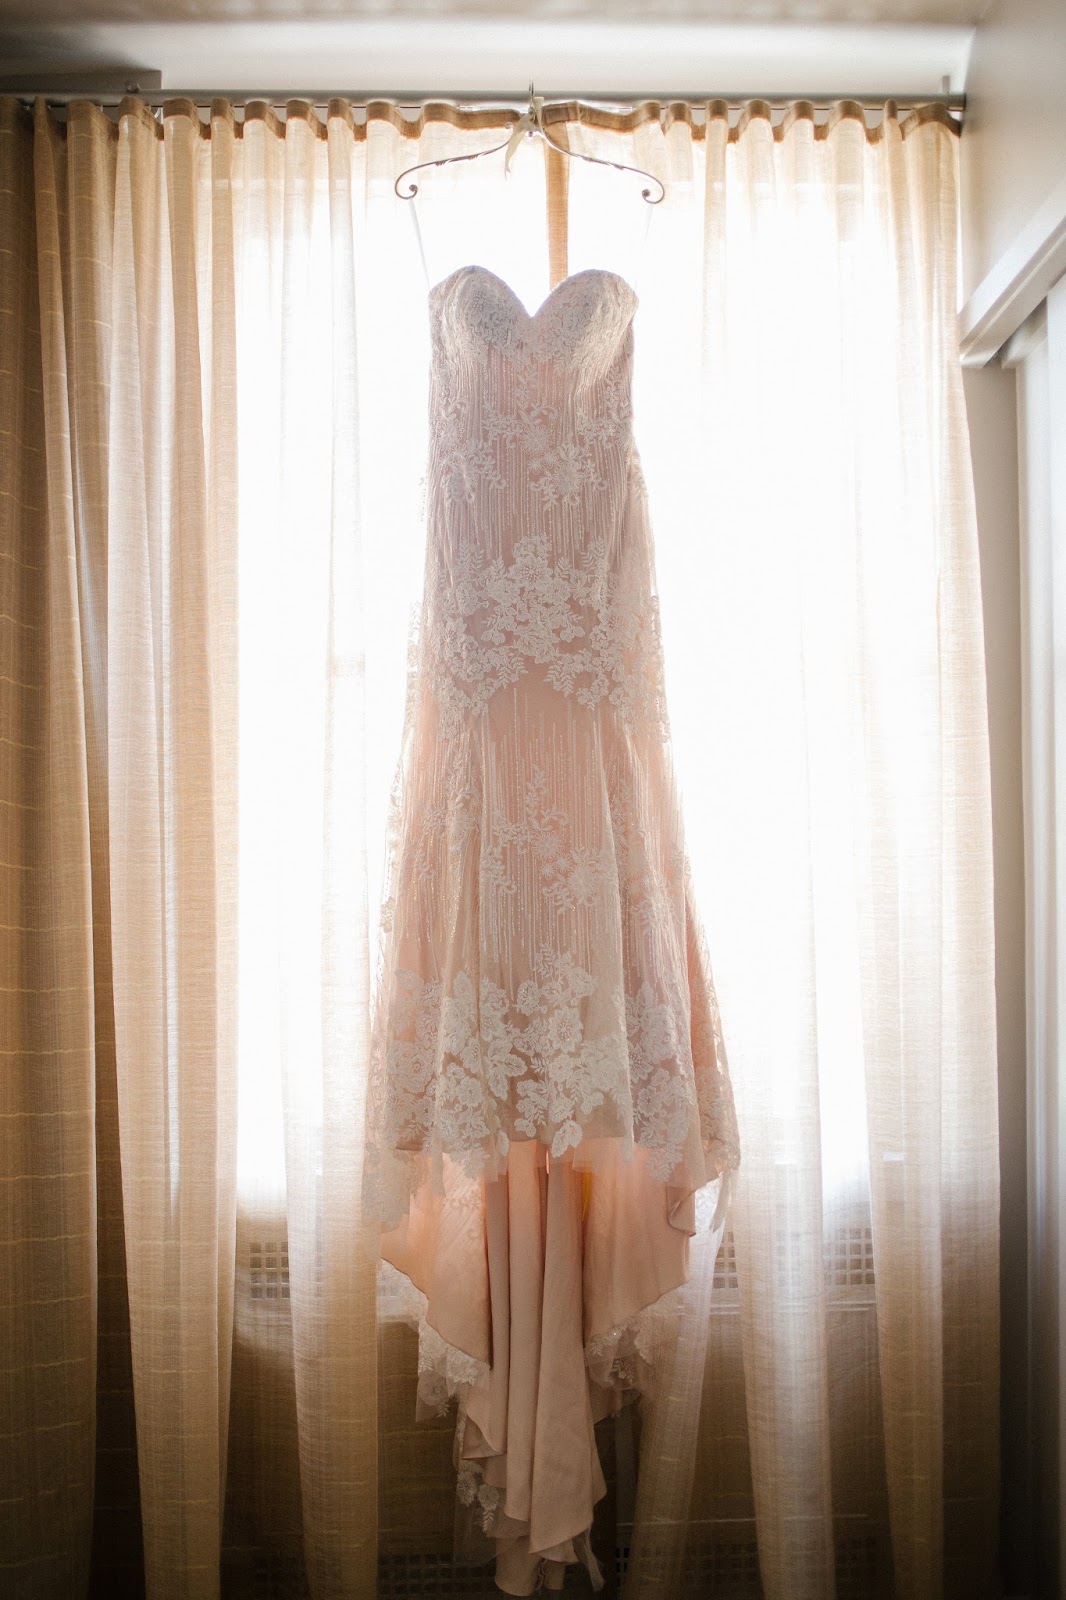 Pink wedding dress hanging up